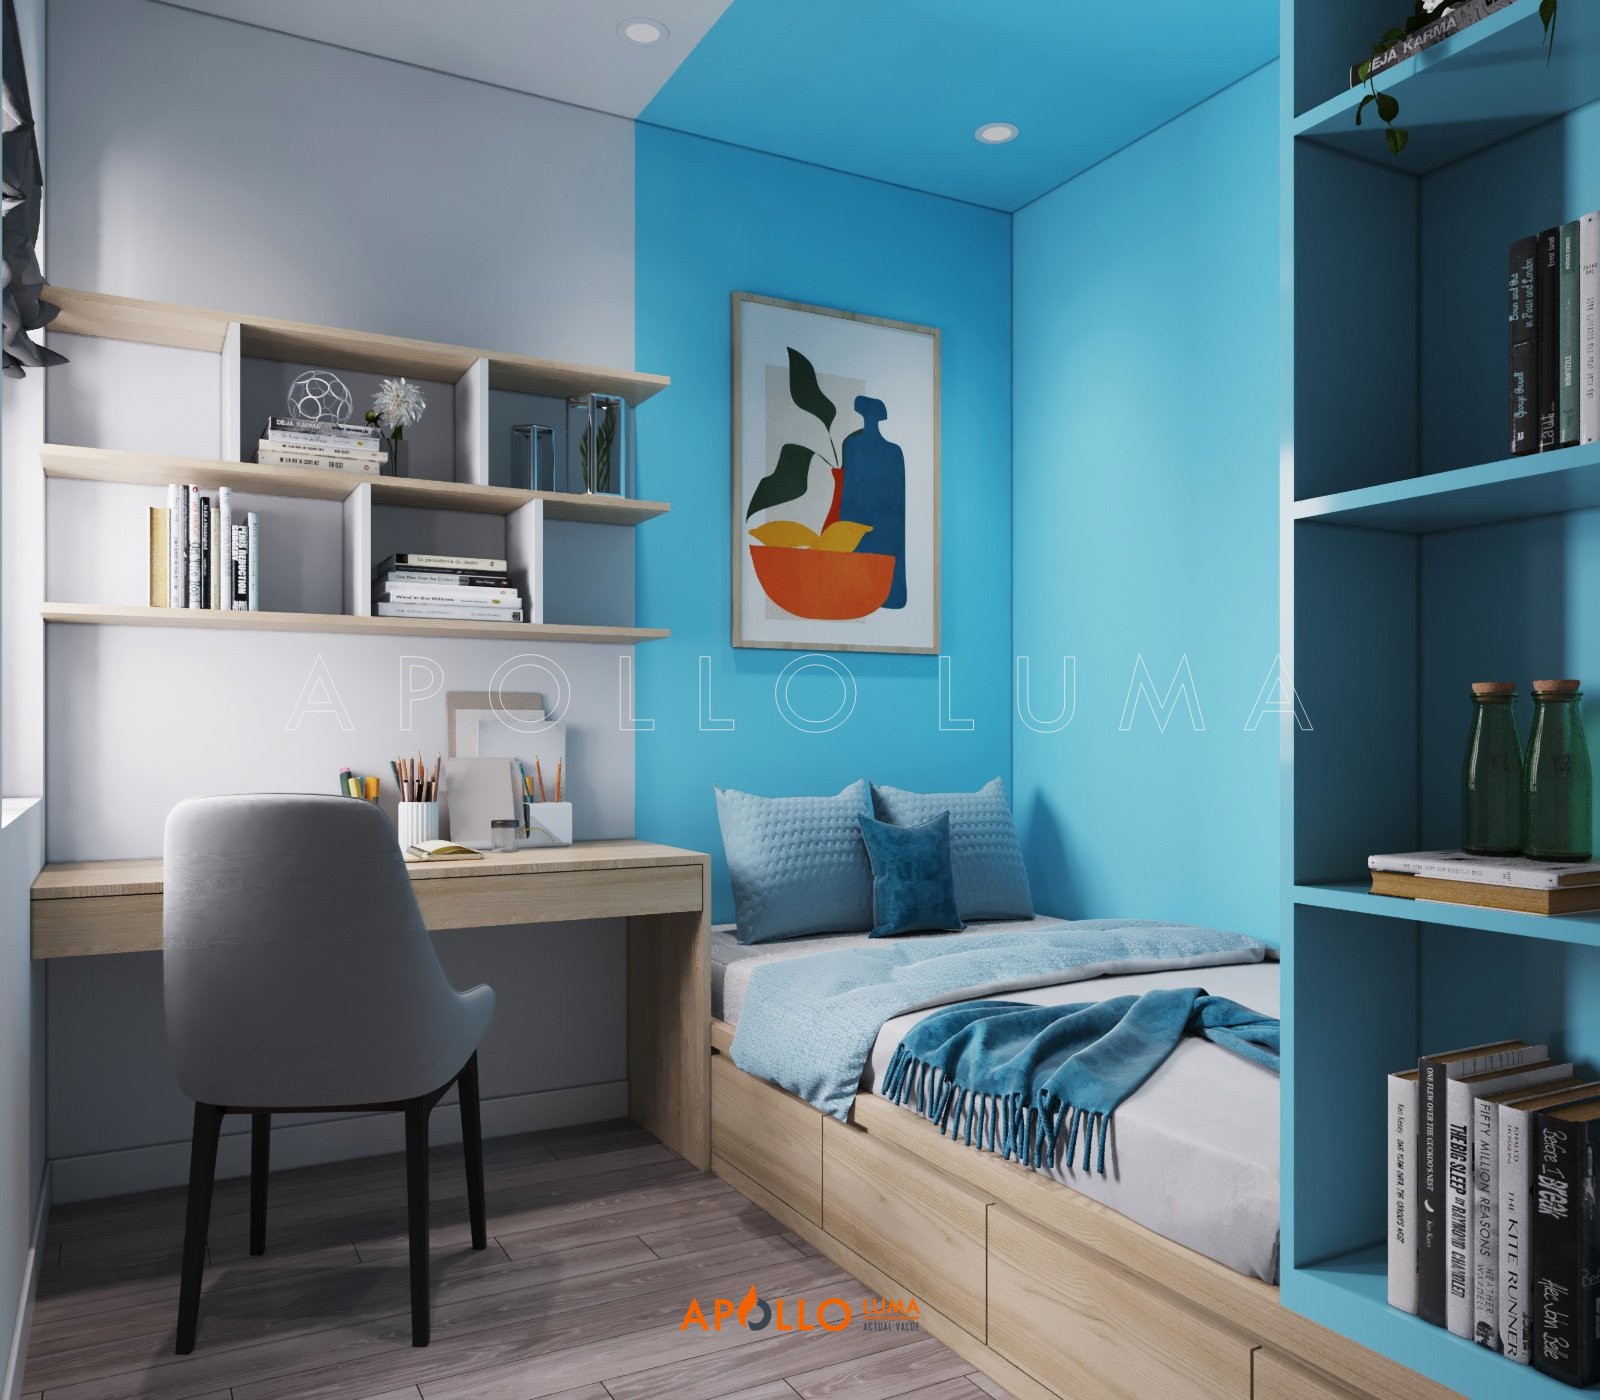 Thiết kế nội thất căn hộ 2 phòng ngủ Imperia Smart City phong cách Scandinavian